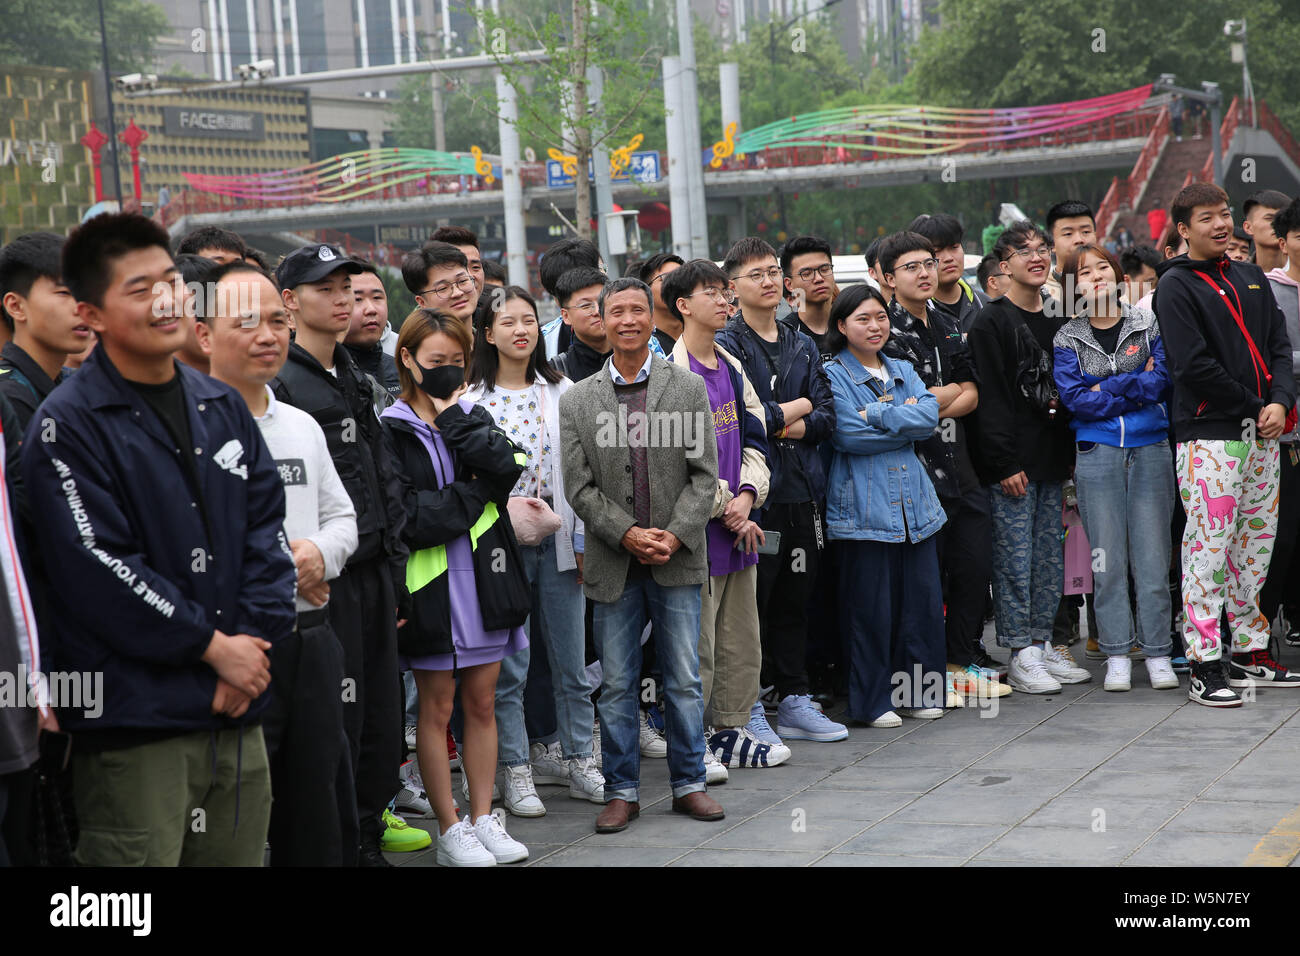 Los jóvenes compradores chinos cola frente de una tienda ropa deportiva de Nike para comprar zapatillas de edición limitada en la ciudad de Xi'an, en el noroeste de la provincia